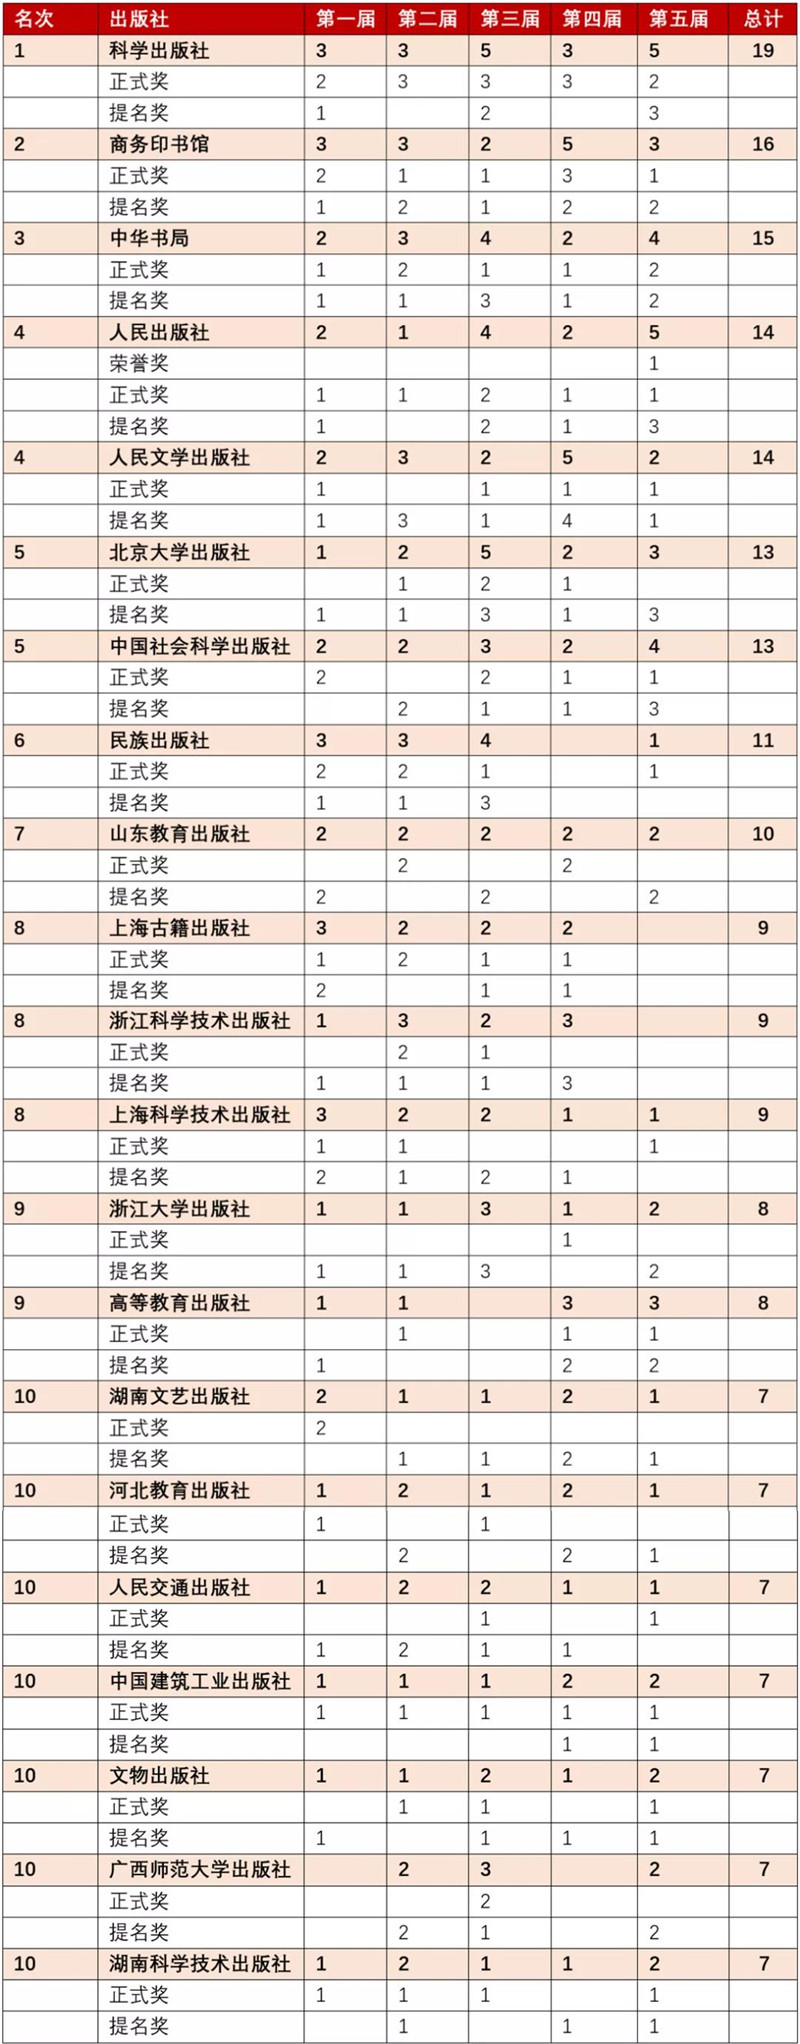 历届“中国出版政府奖”获奖图书数量TOP10.jpg